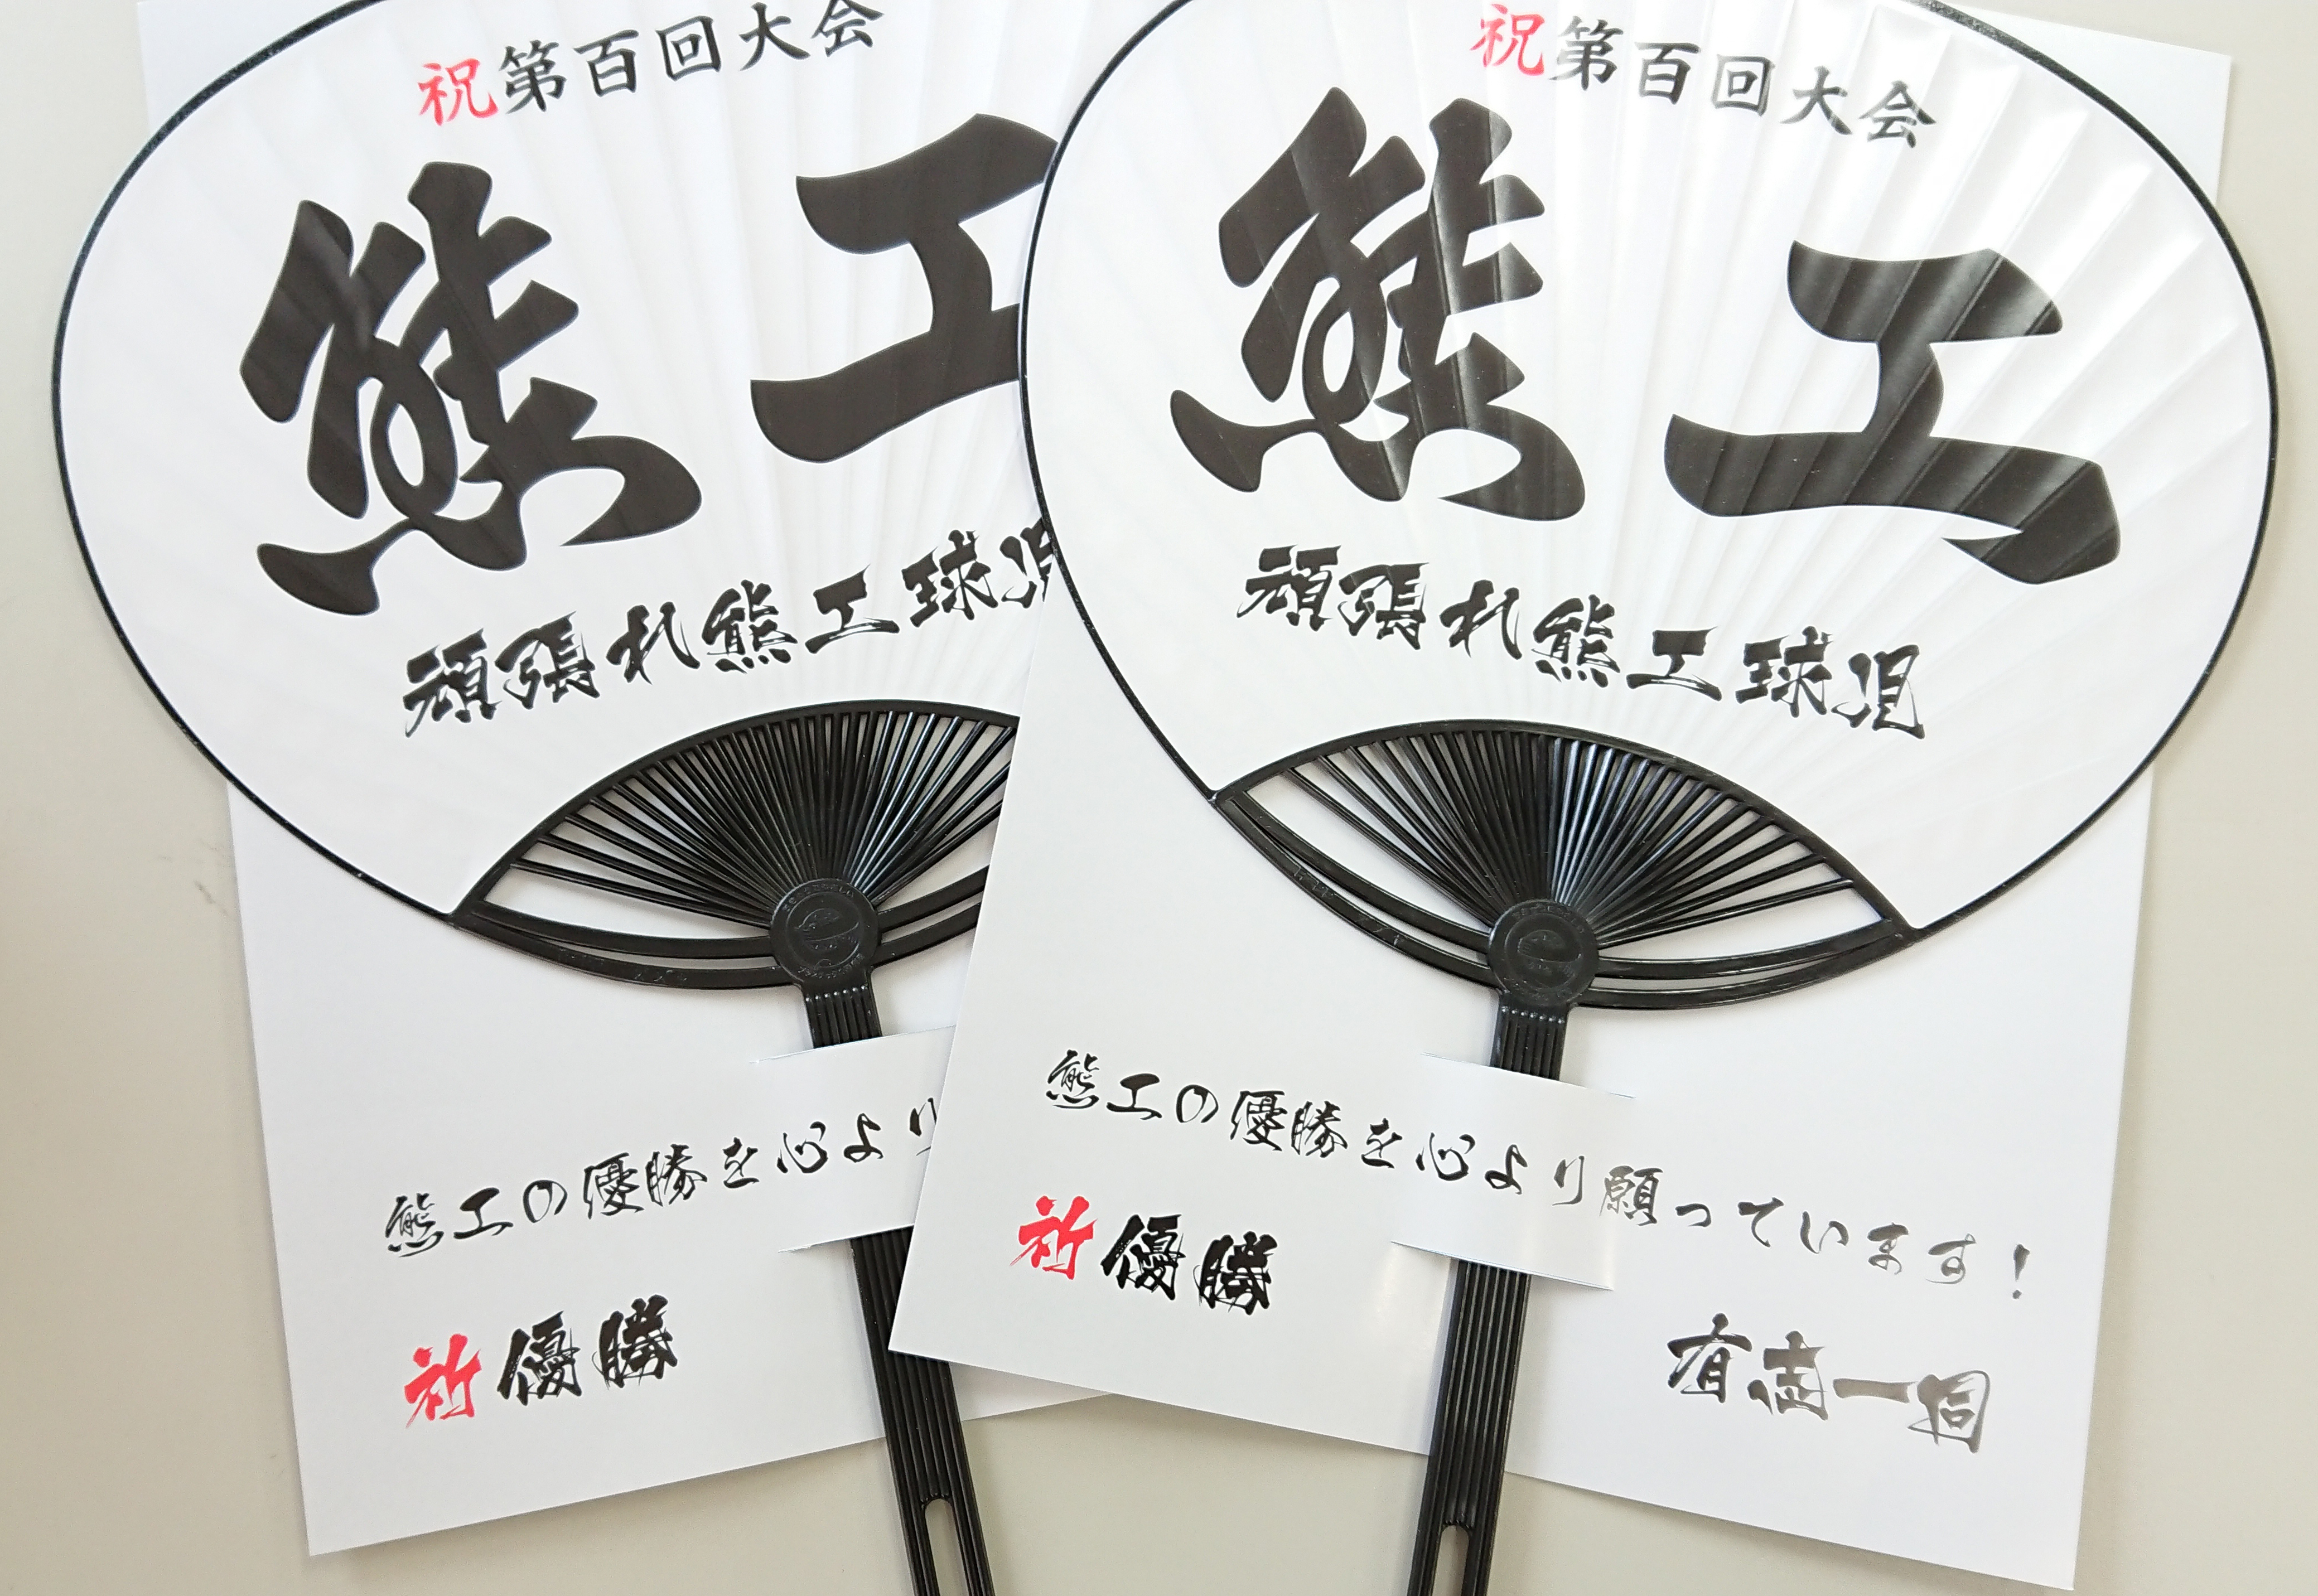 野球応援団扇贈呈式 熊本の黄色い印刷屋 株式会社愛光社 Aikosha Printing